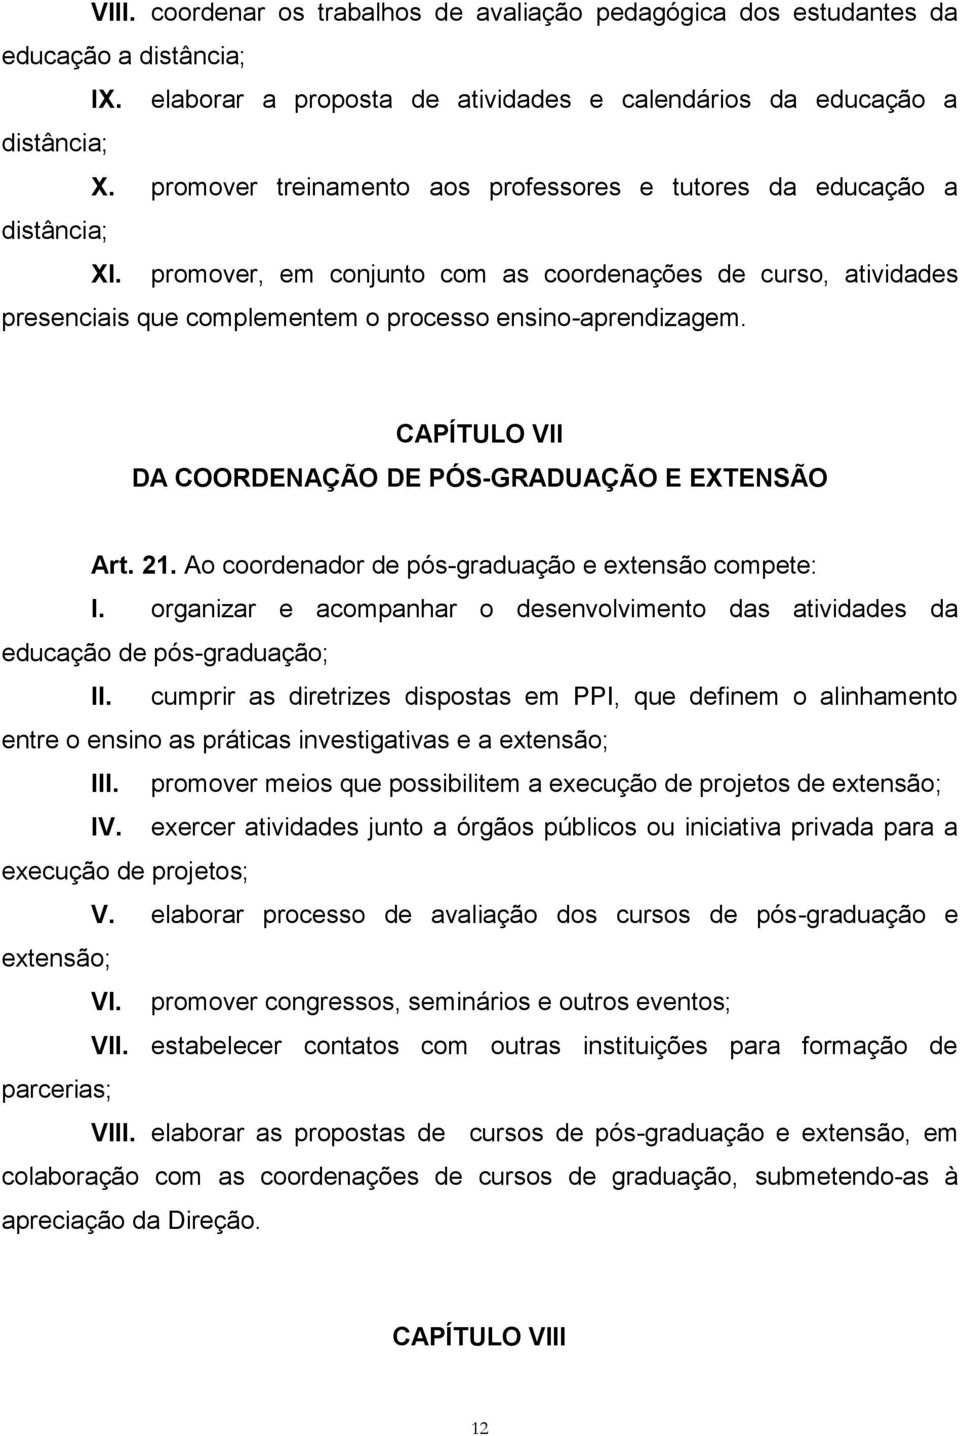 CAPÍTULO VII DA COORDENAÇÃO DE PÓS-GRADUAÇÃO E EXTENSÃO Art. 21. Ao coordenador de pós-graduação e extensão compete: I.